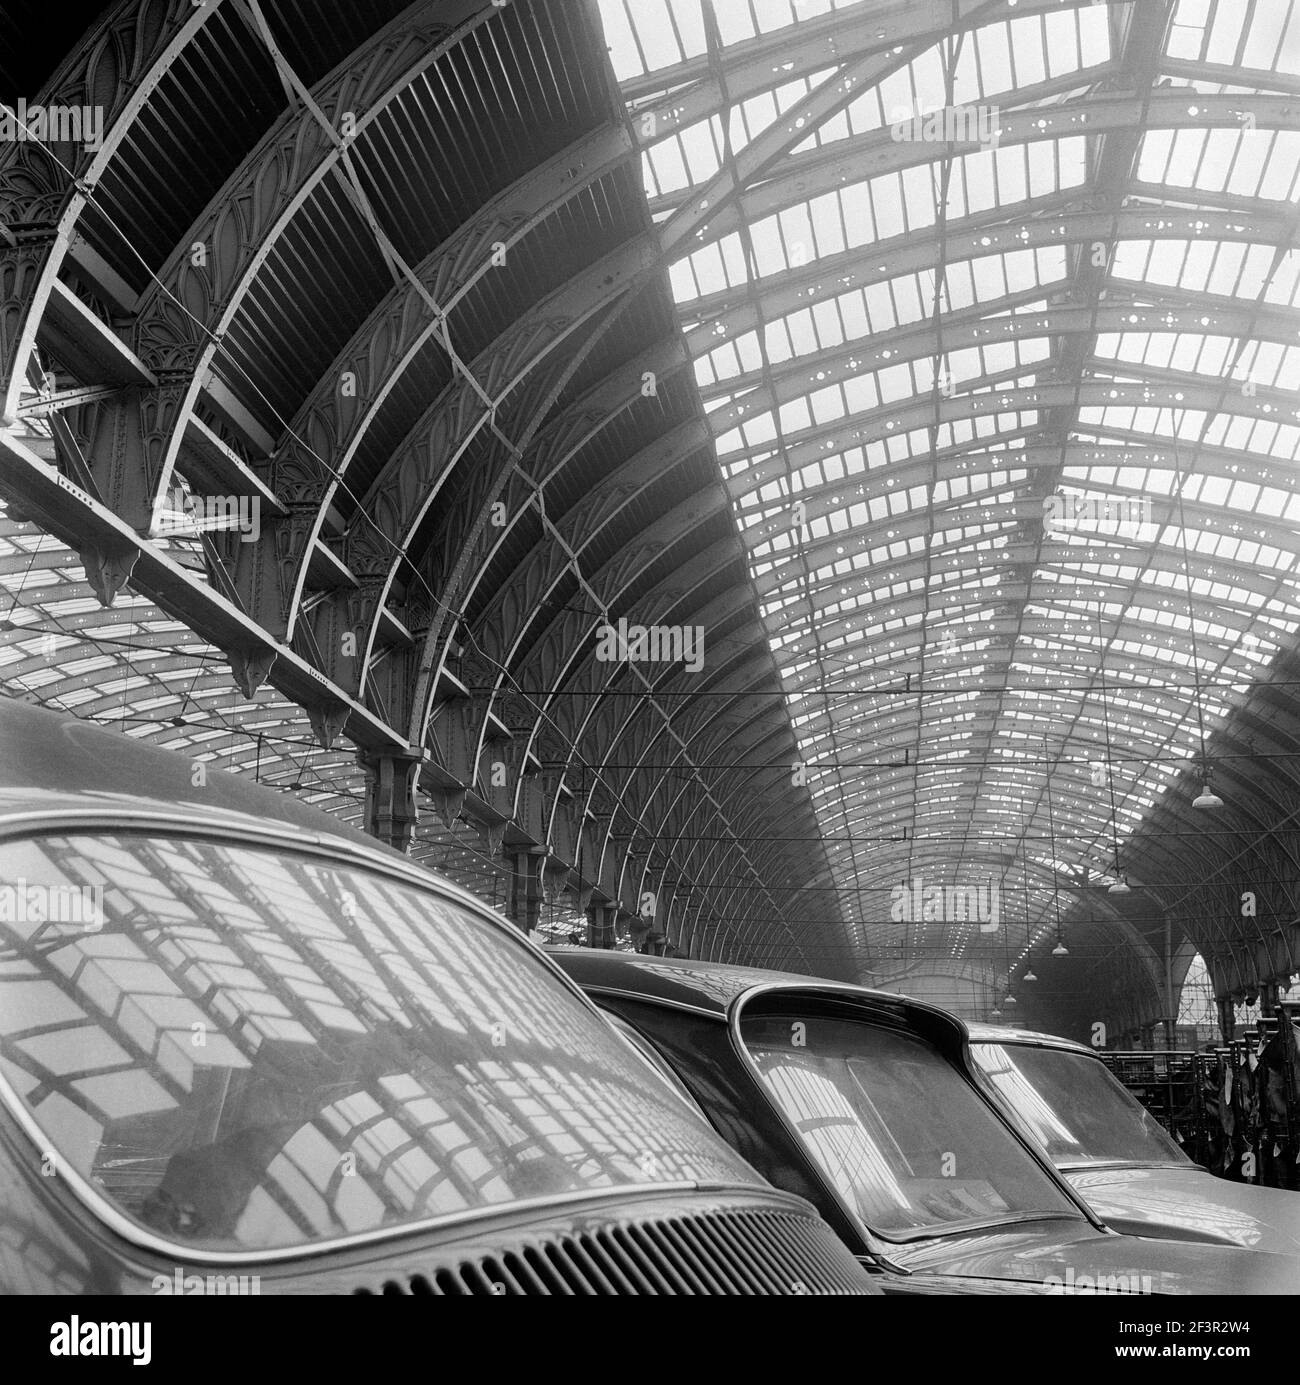 PADDINGTON STATION, London. Innenansicht mit dem Dach des Bahnhofs Paddington, spiegelt sich in den Fenstern der geparkten Autos wider. John Gay. Datum des Erläuschens Stockfoto